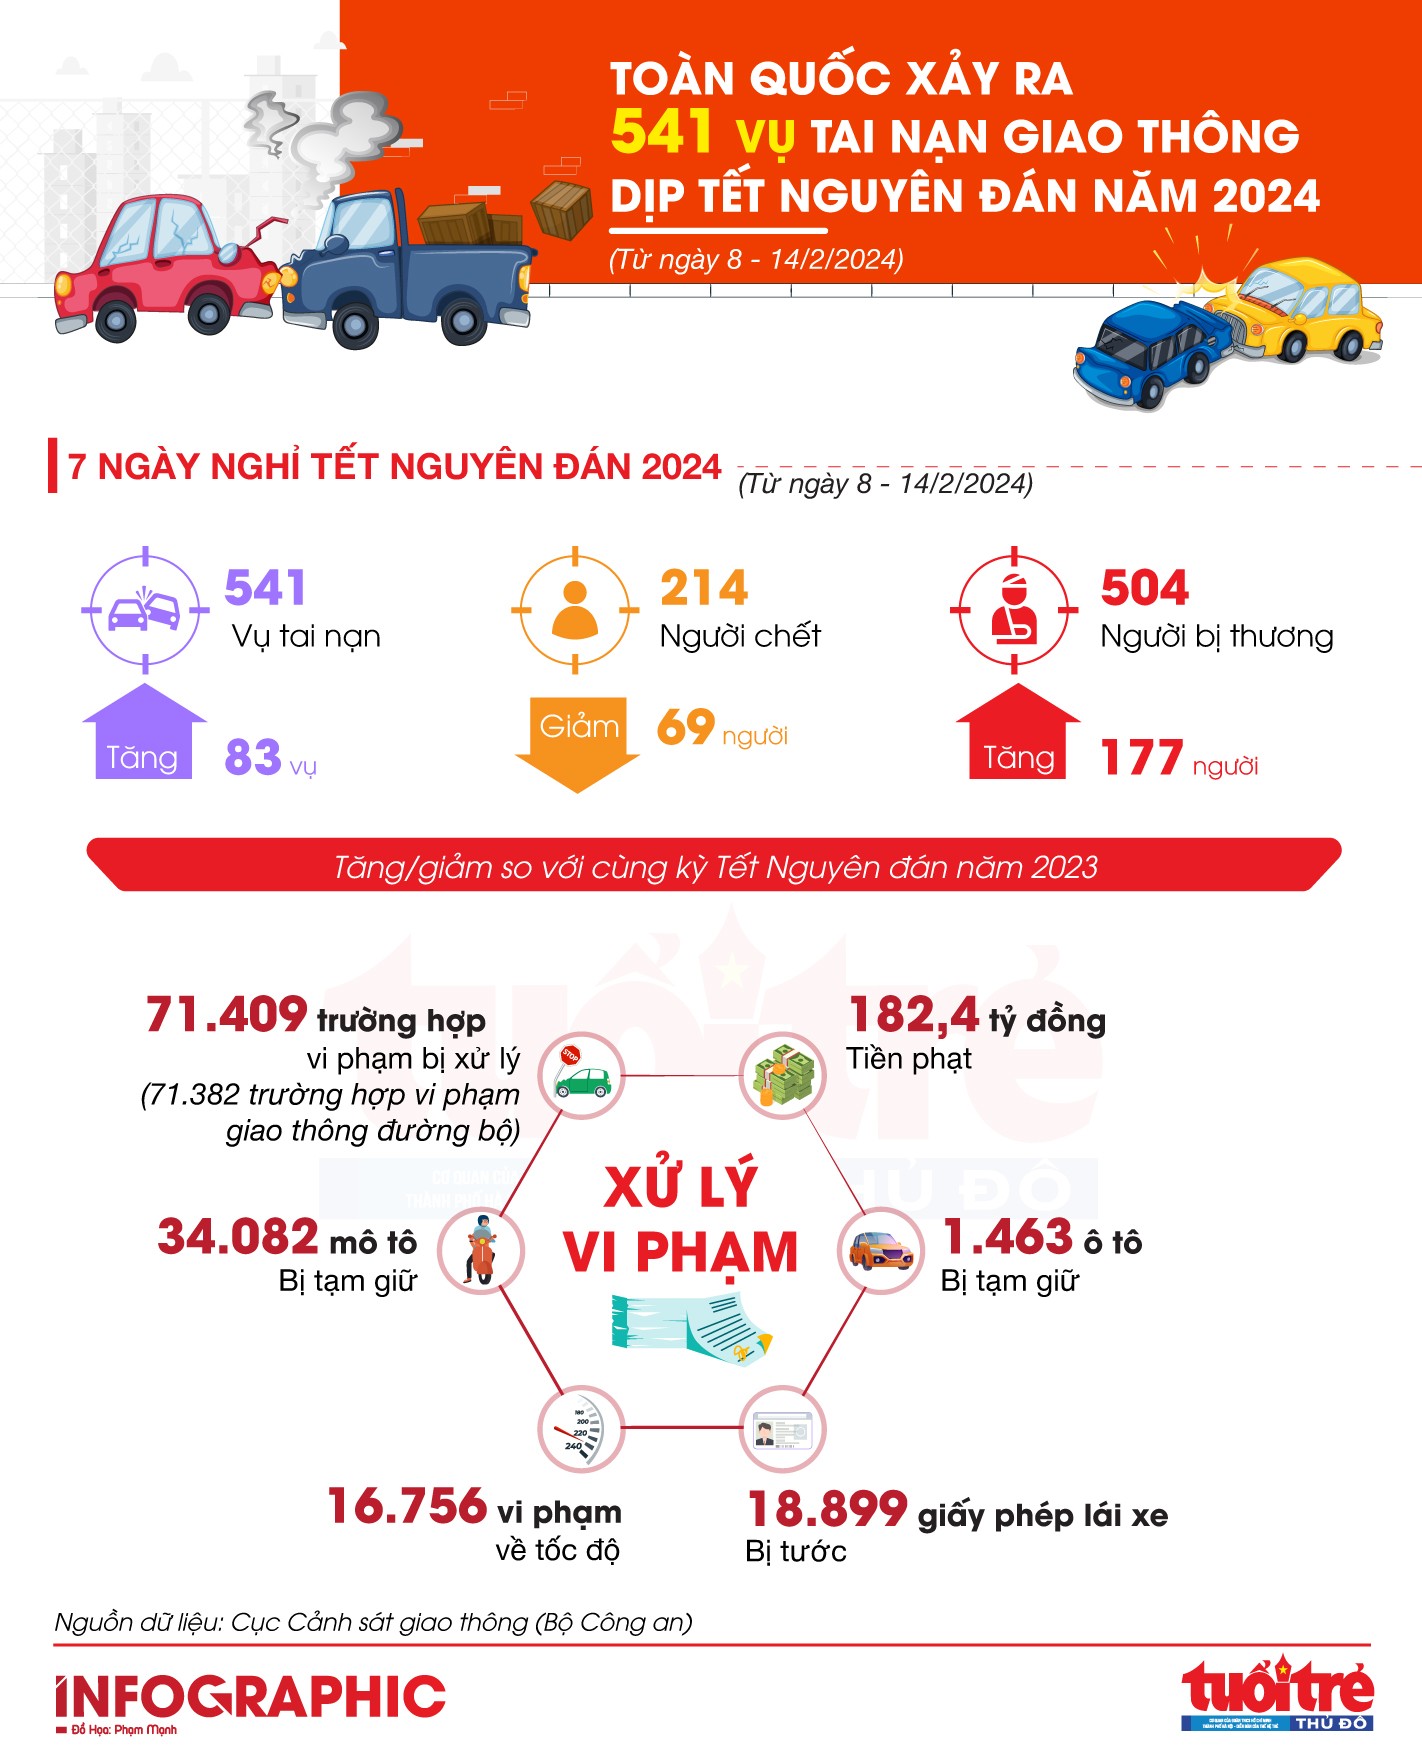 Toàn quốc xảy ra 541 vụ tai nạn giao thông dịp Tết Nguyên đán